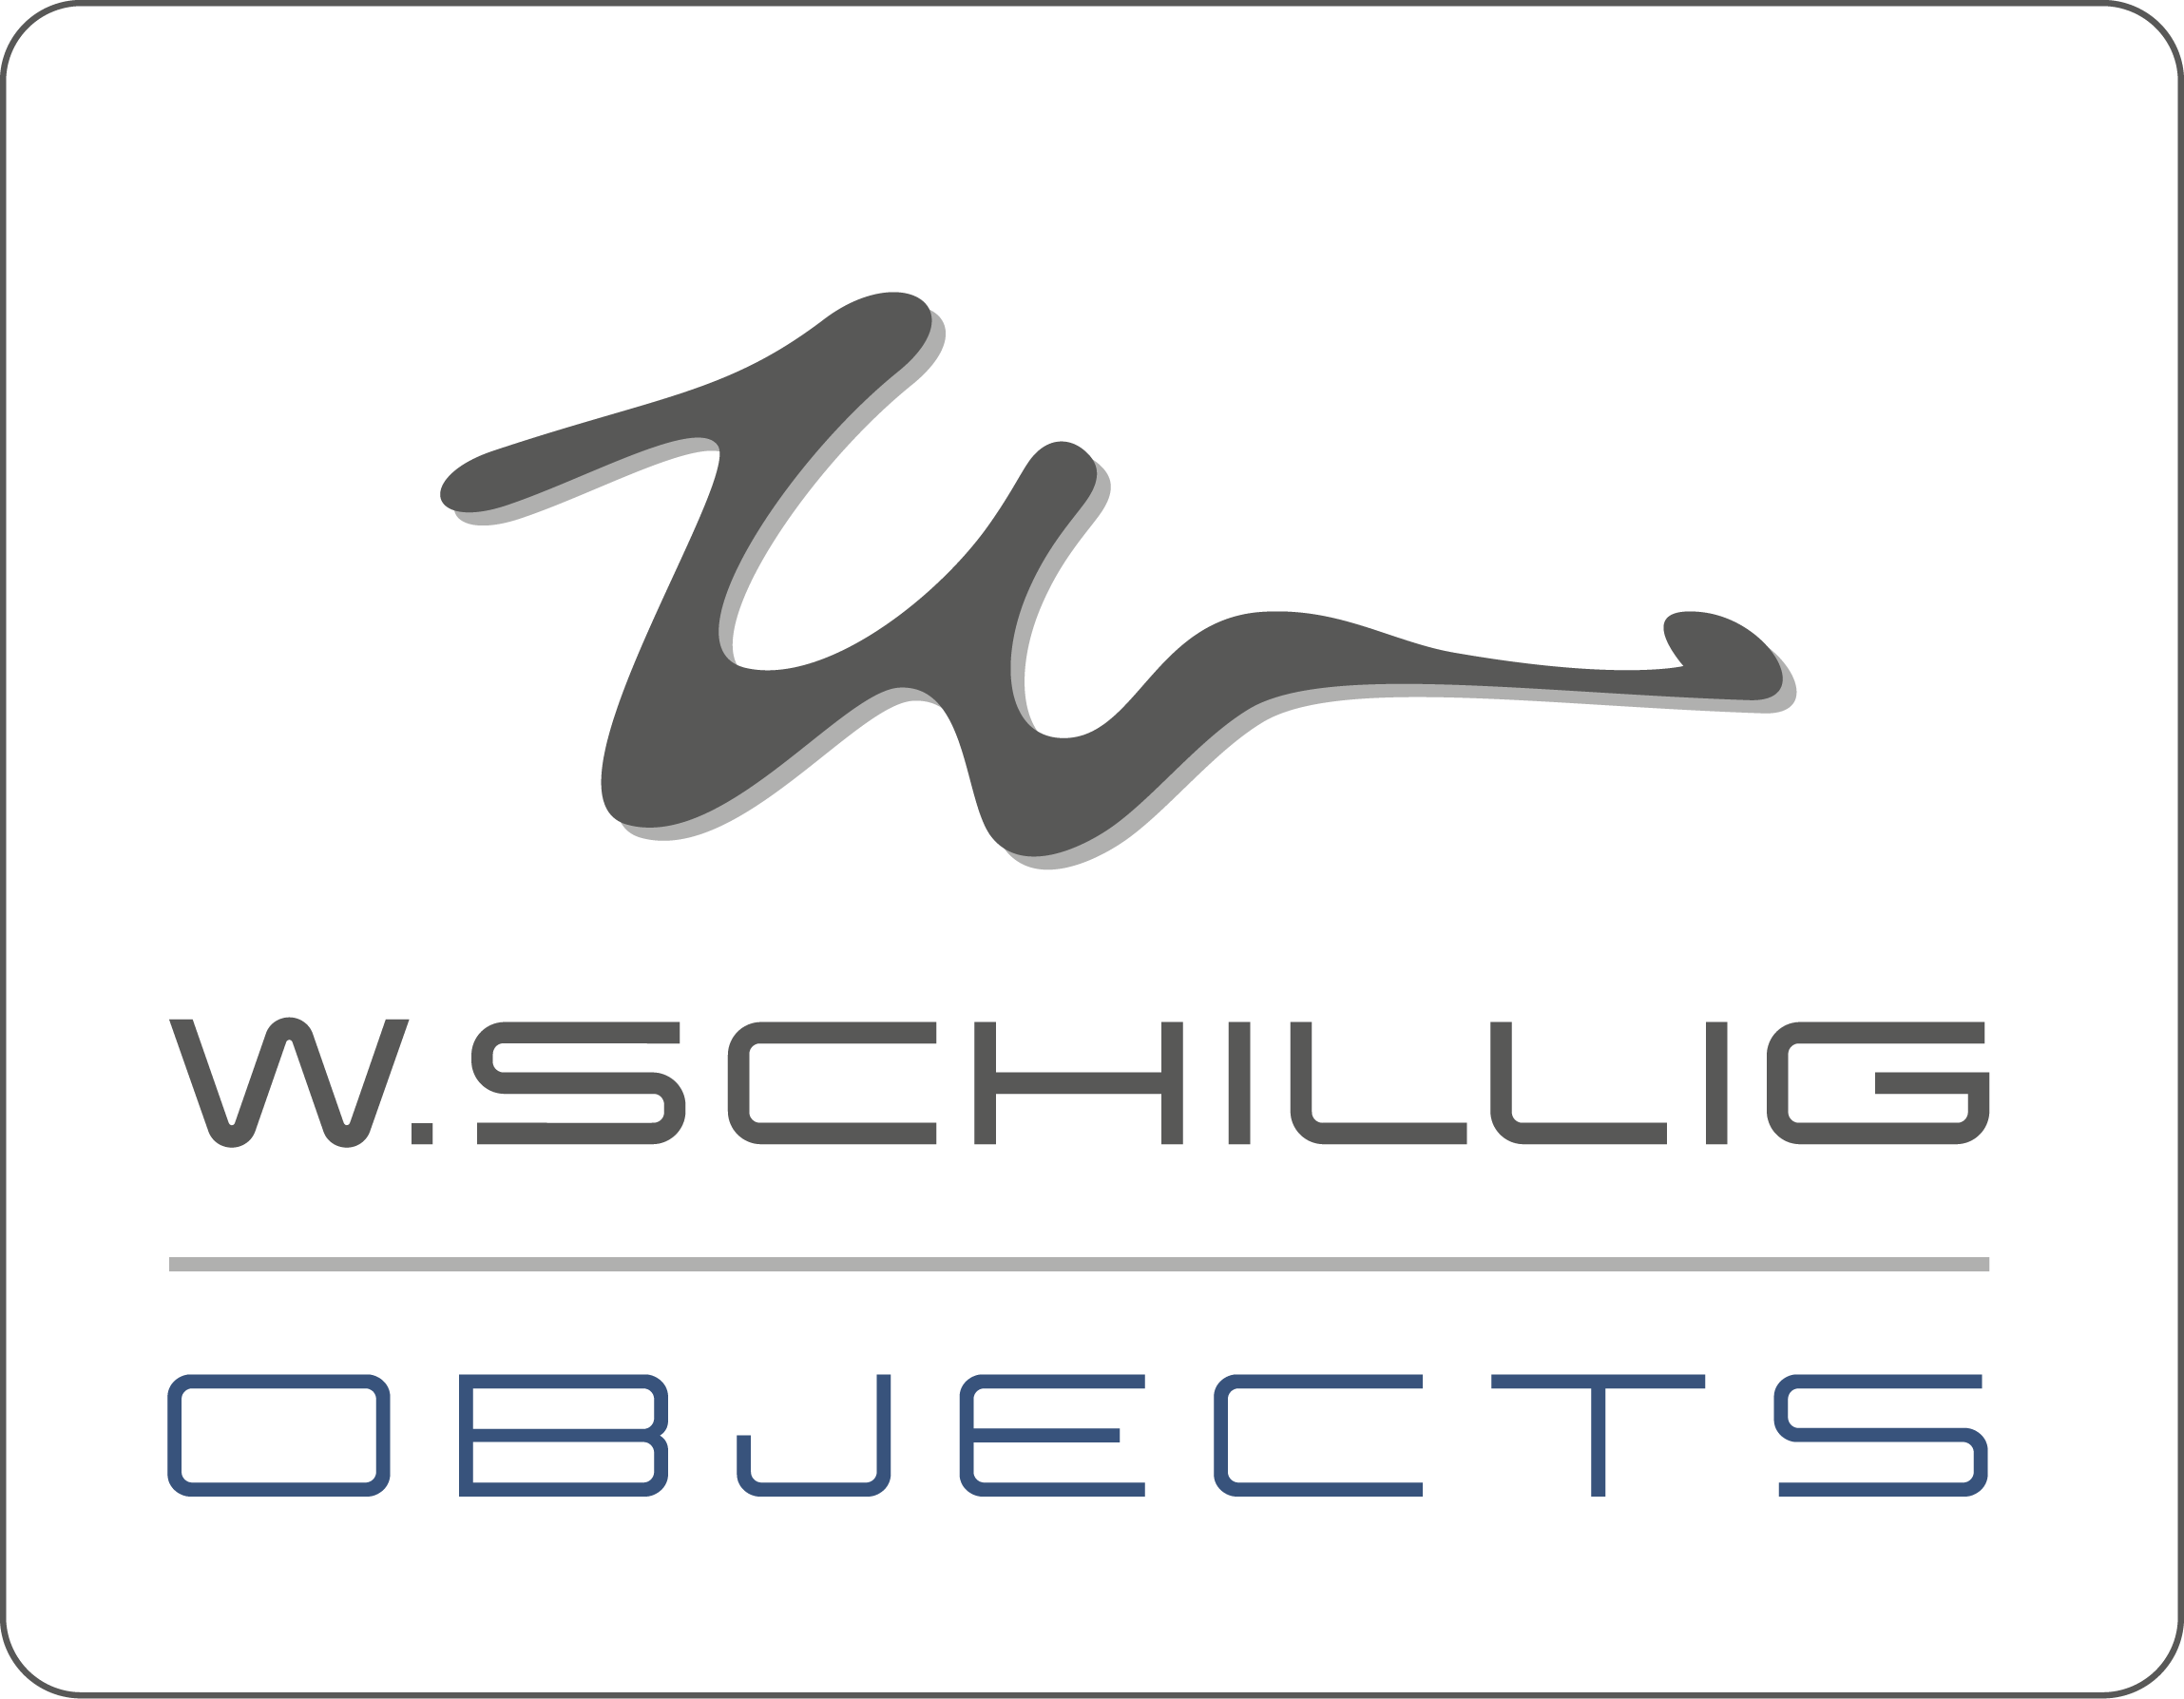 W. Schillig objects GmbH & Co. KG